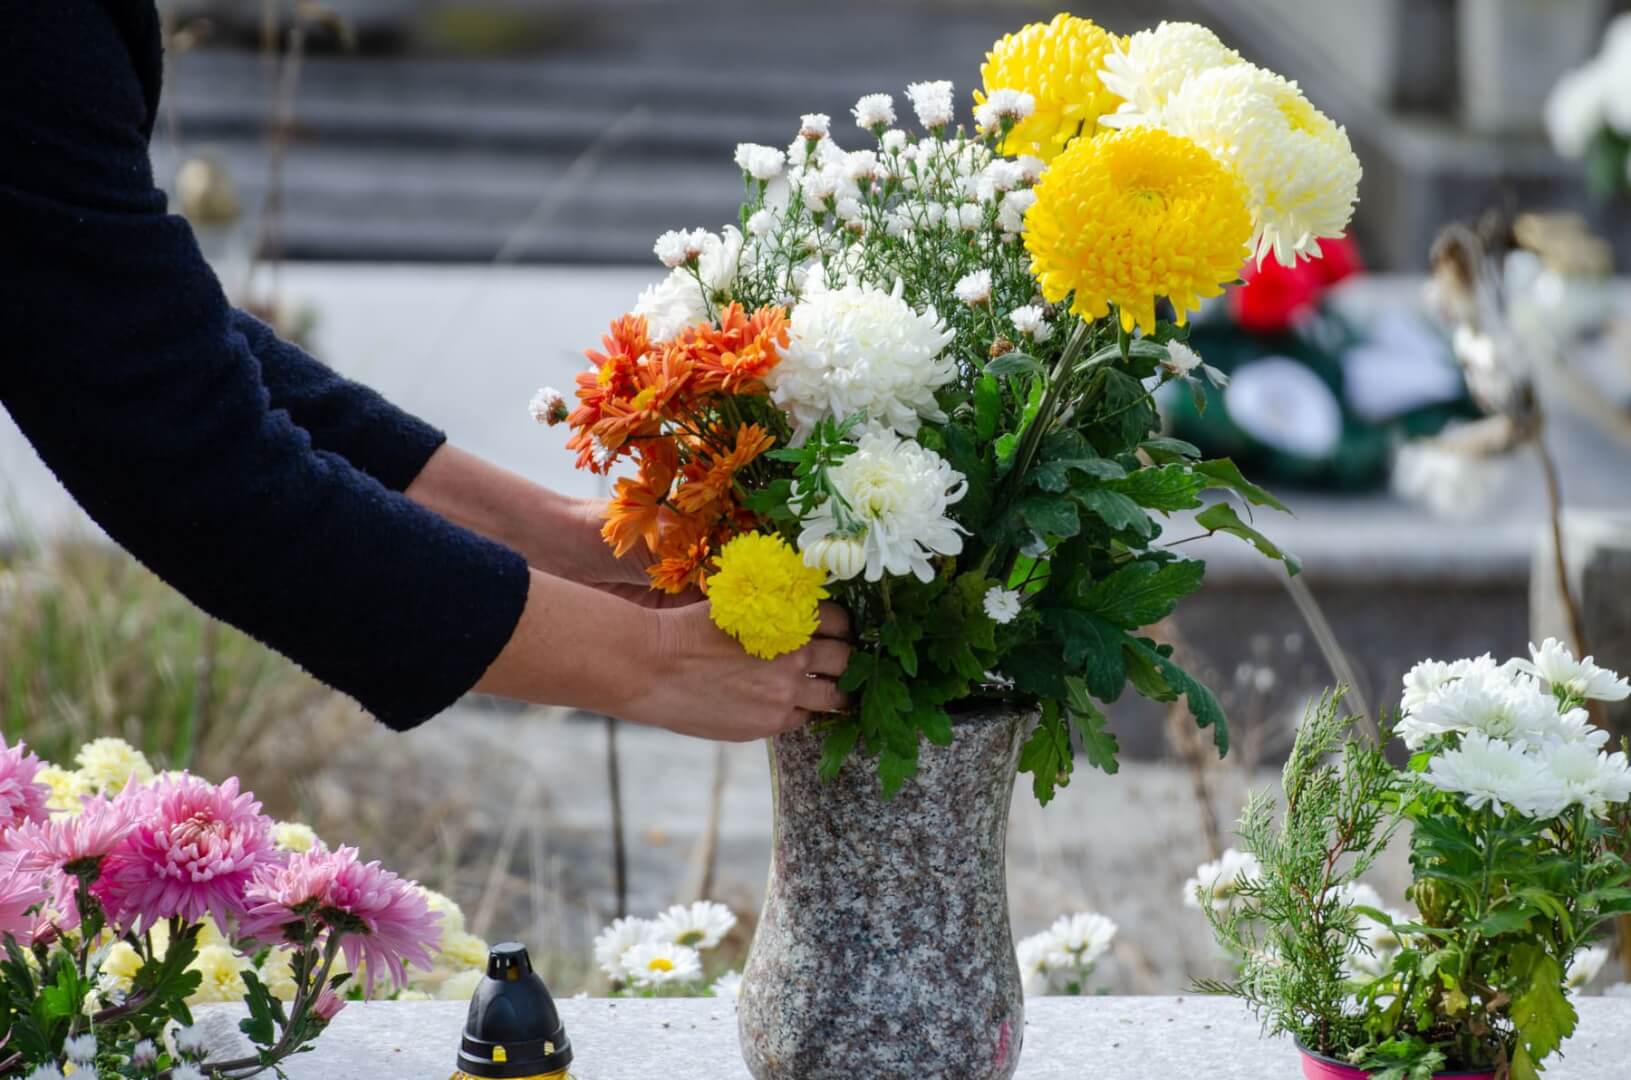 Una persona deposita unas flores sobre una tumba.